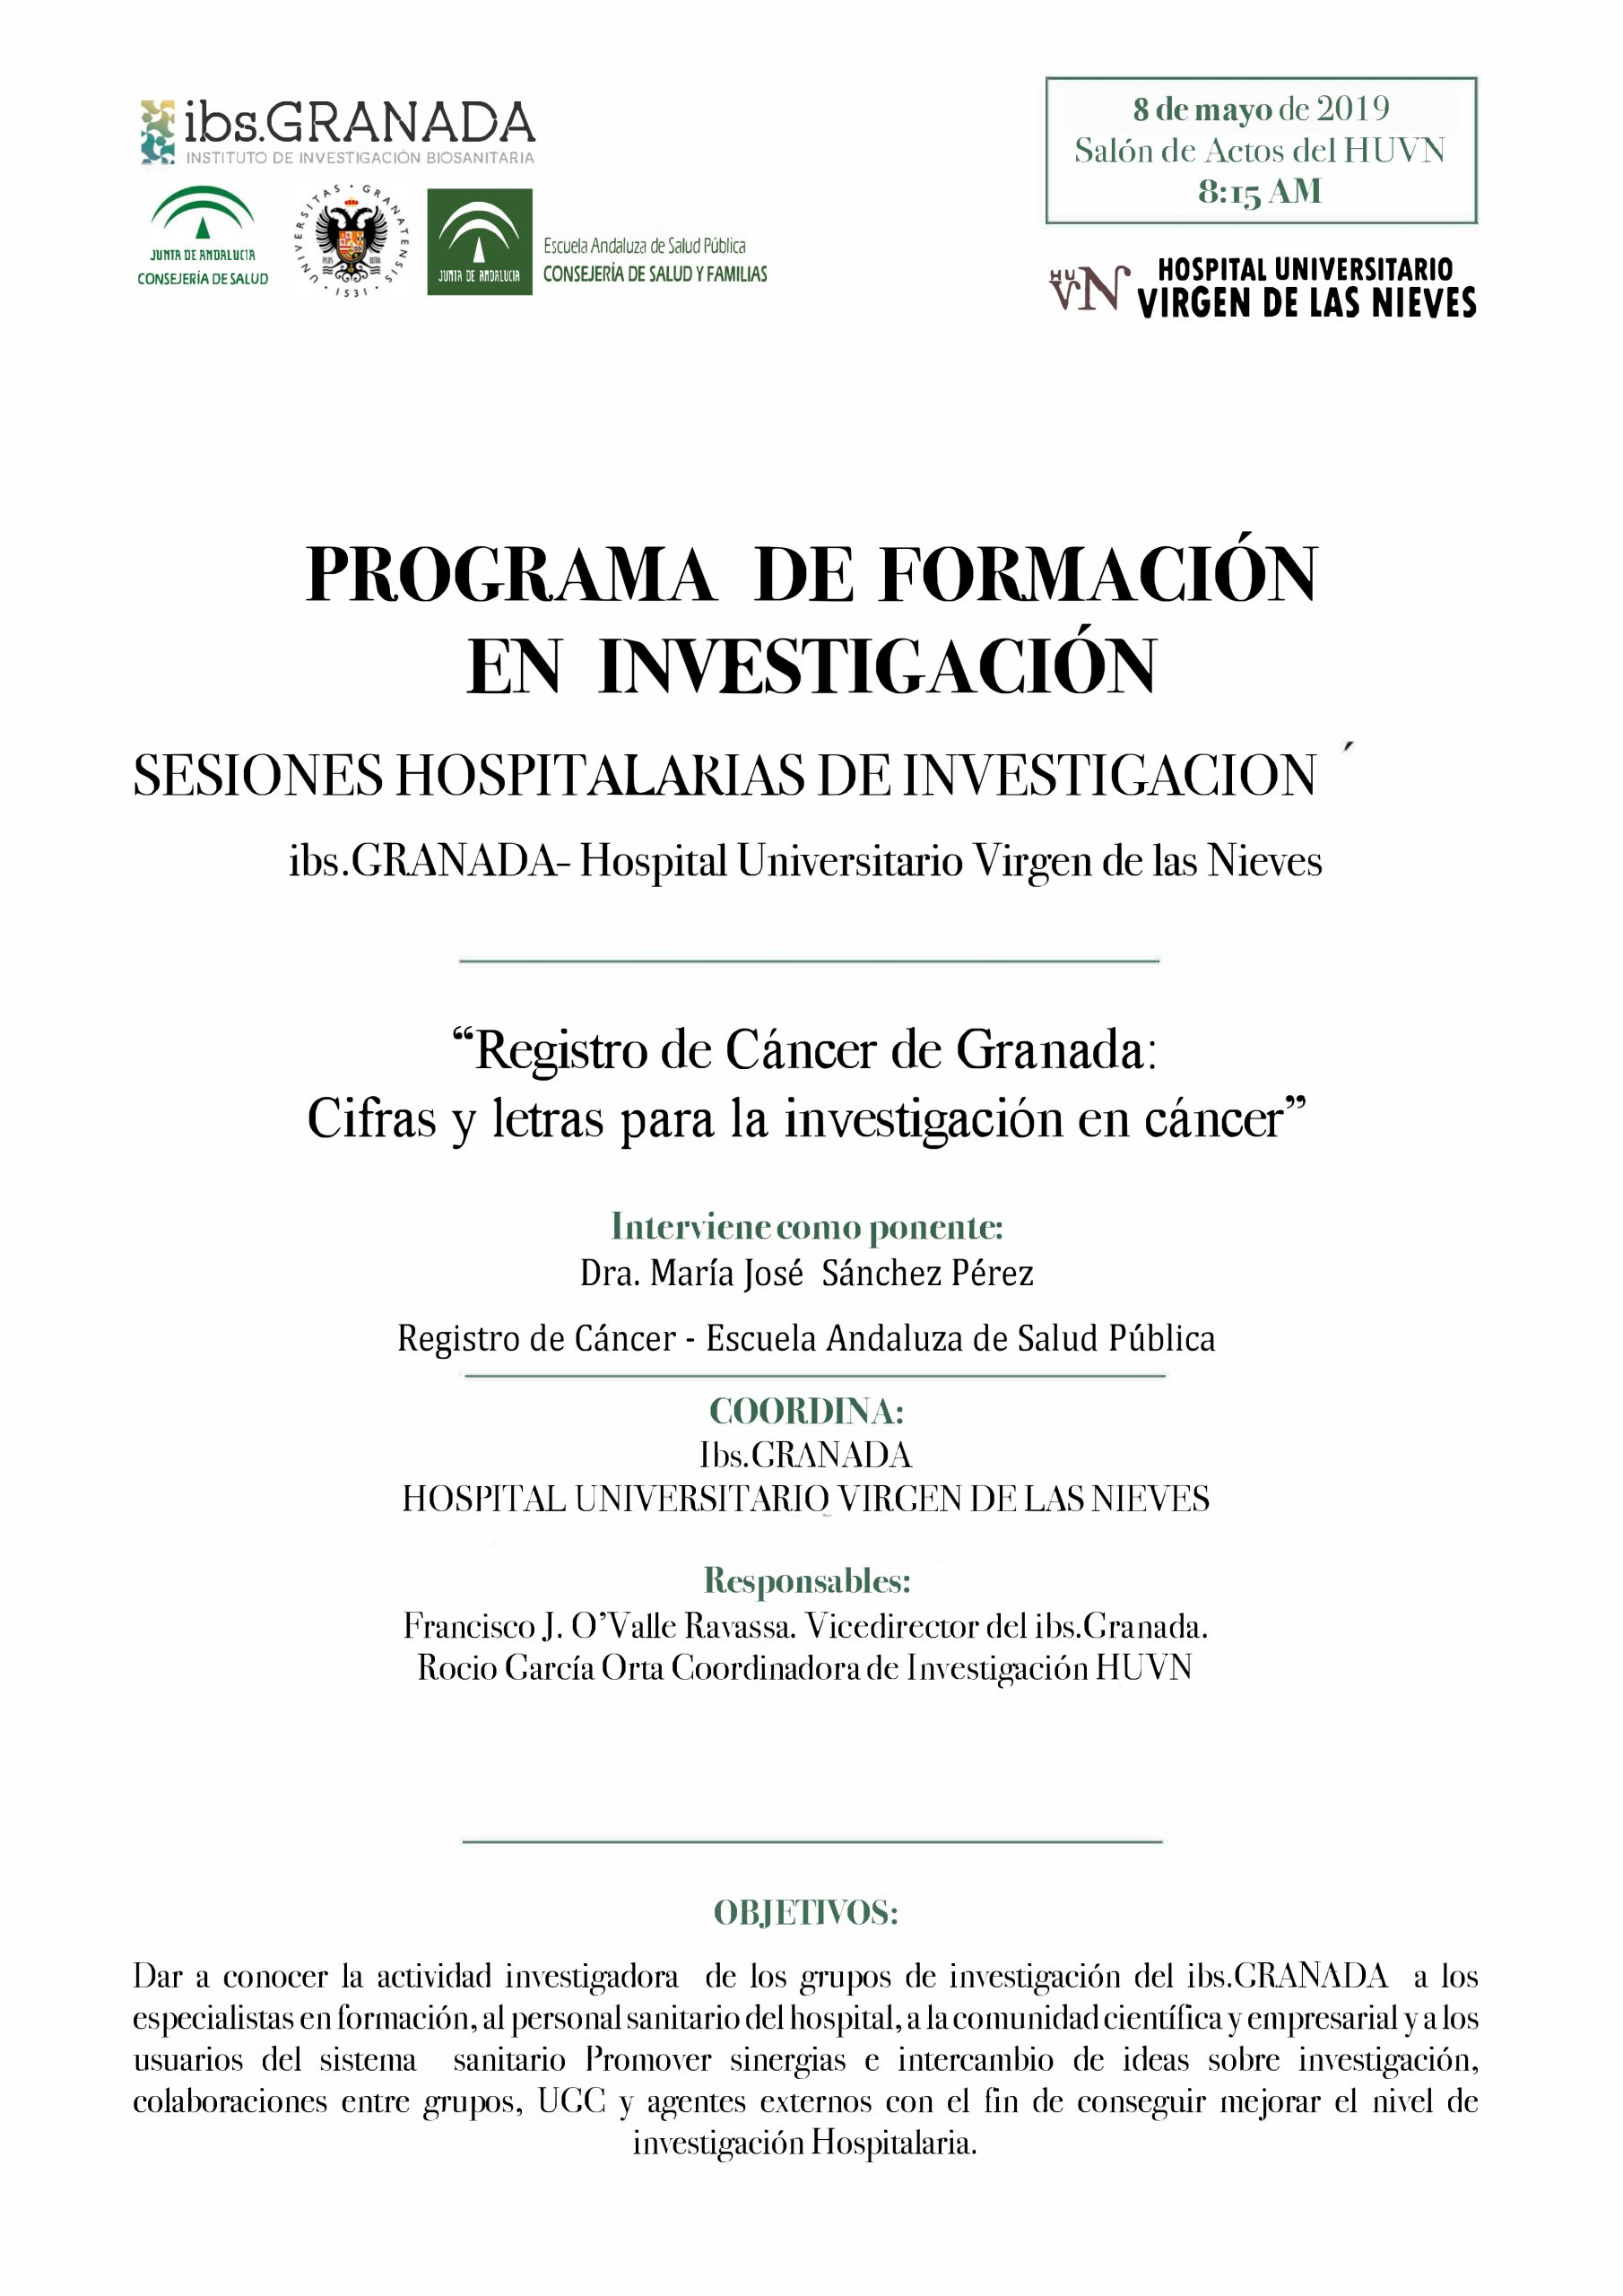 Sesión Hospitalaria: "Registro de Cáncer de Granada: Cifras y letras para la investigación en cáncer"